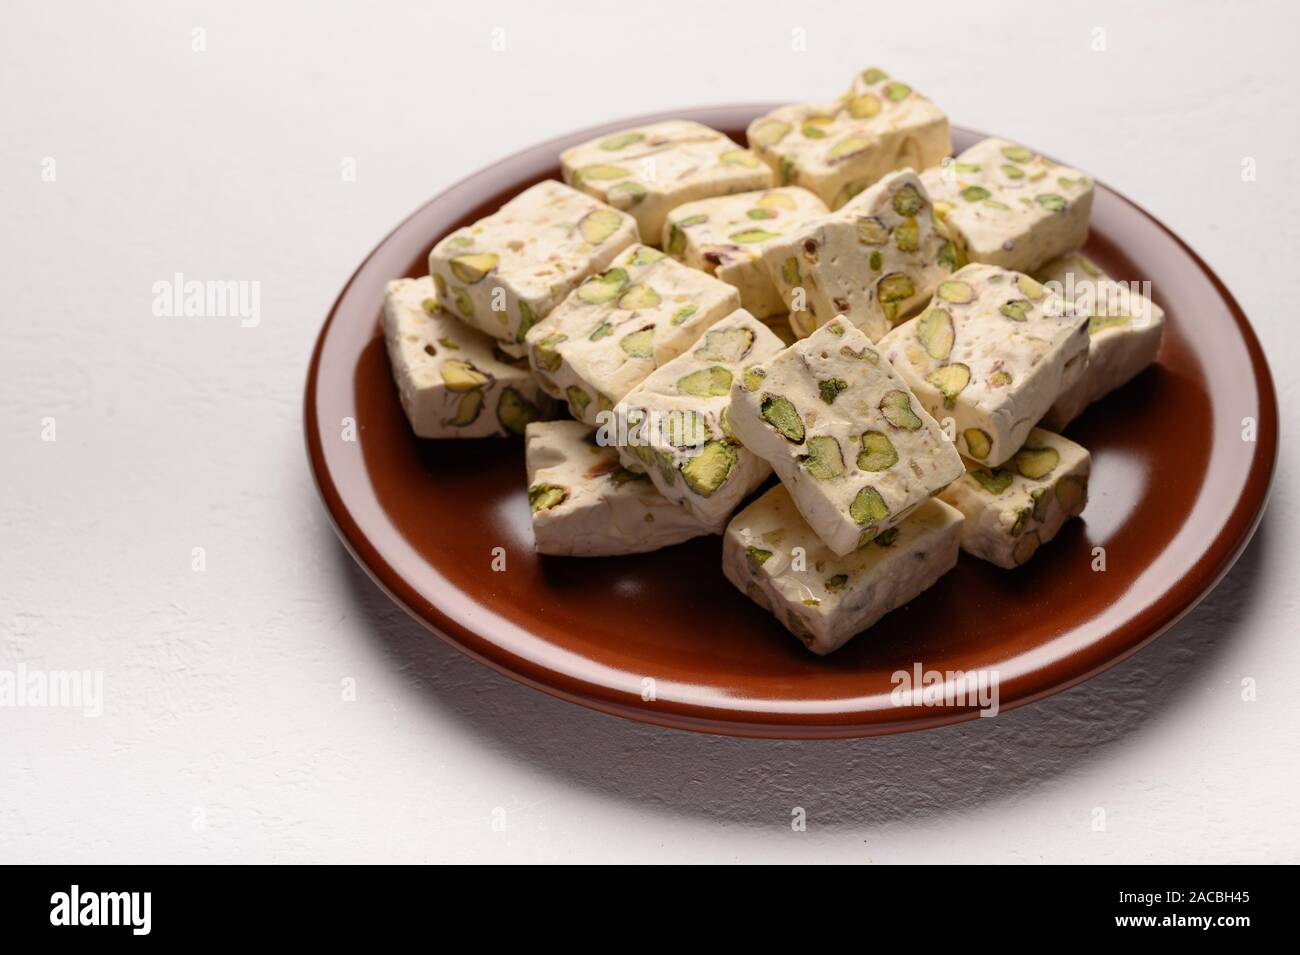 Osten Arabisch nougat Süße mit Pistazien auf einem braunen Keramikplatte auf einem hellen Hintergrund Stockfoto